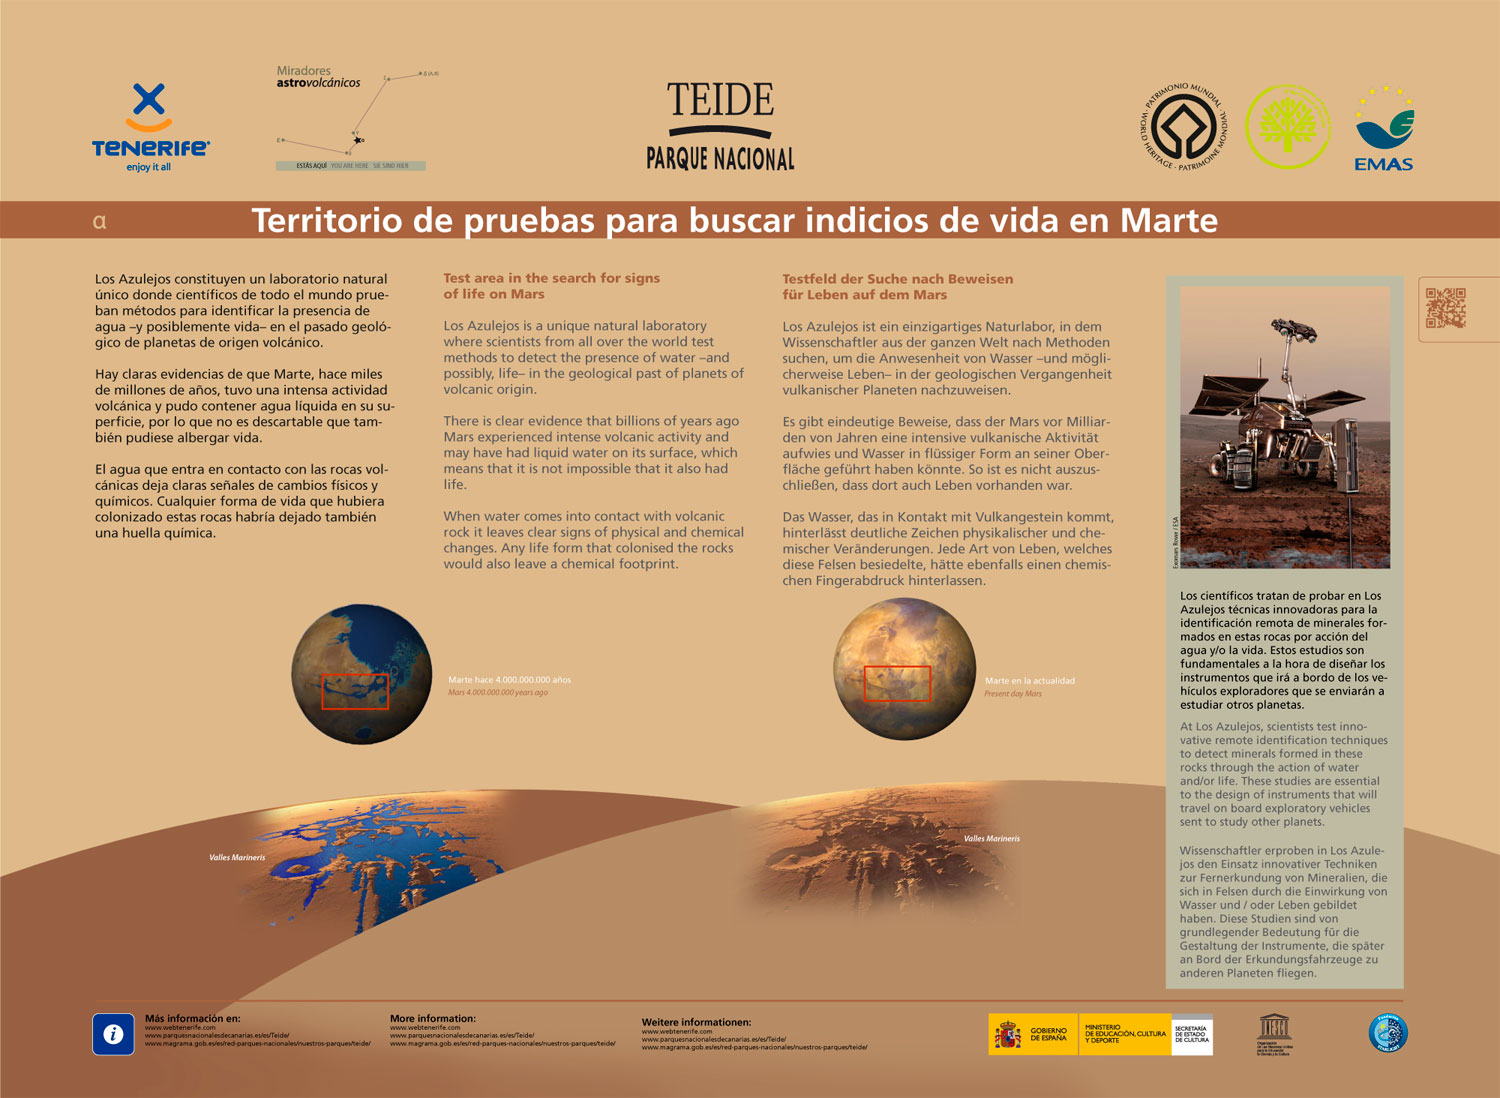 Territorio di esperimenti per cercare segni di vita su Marte